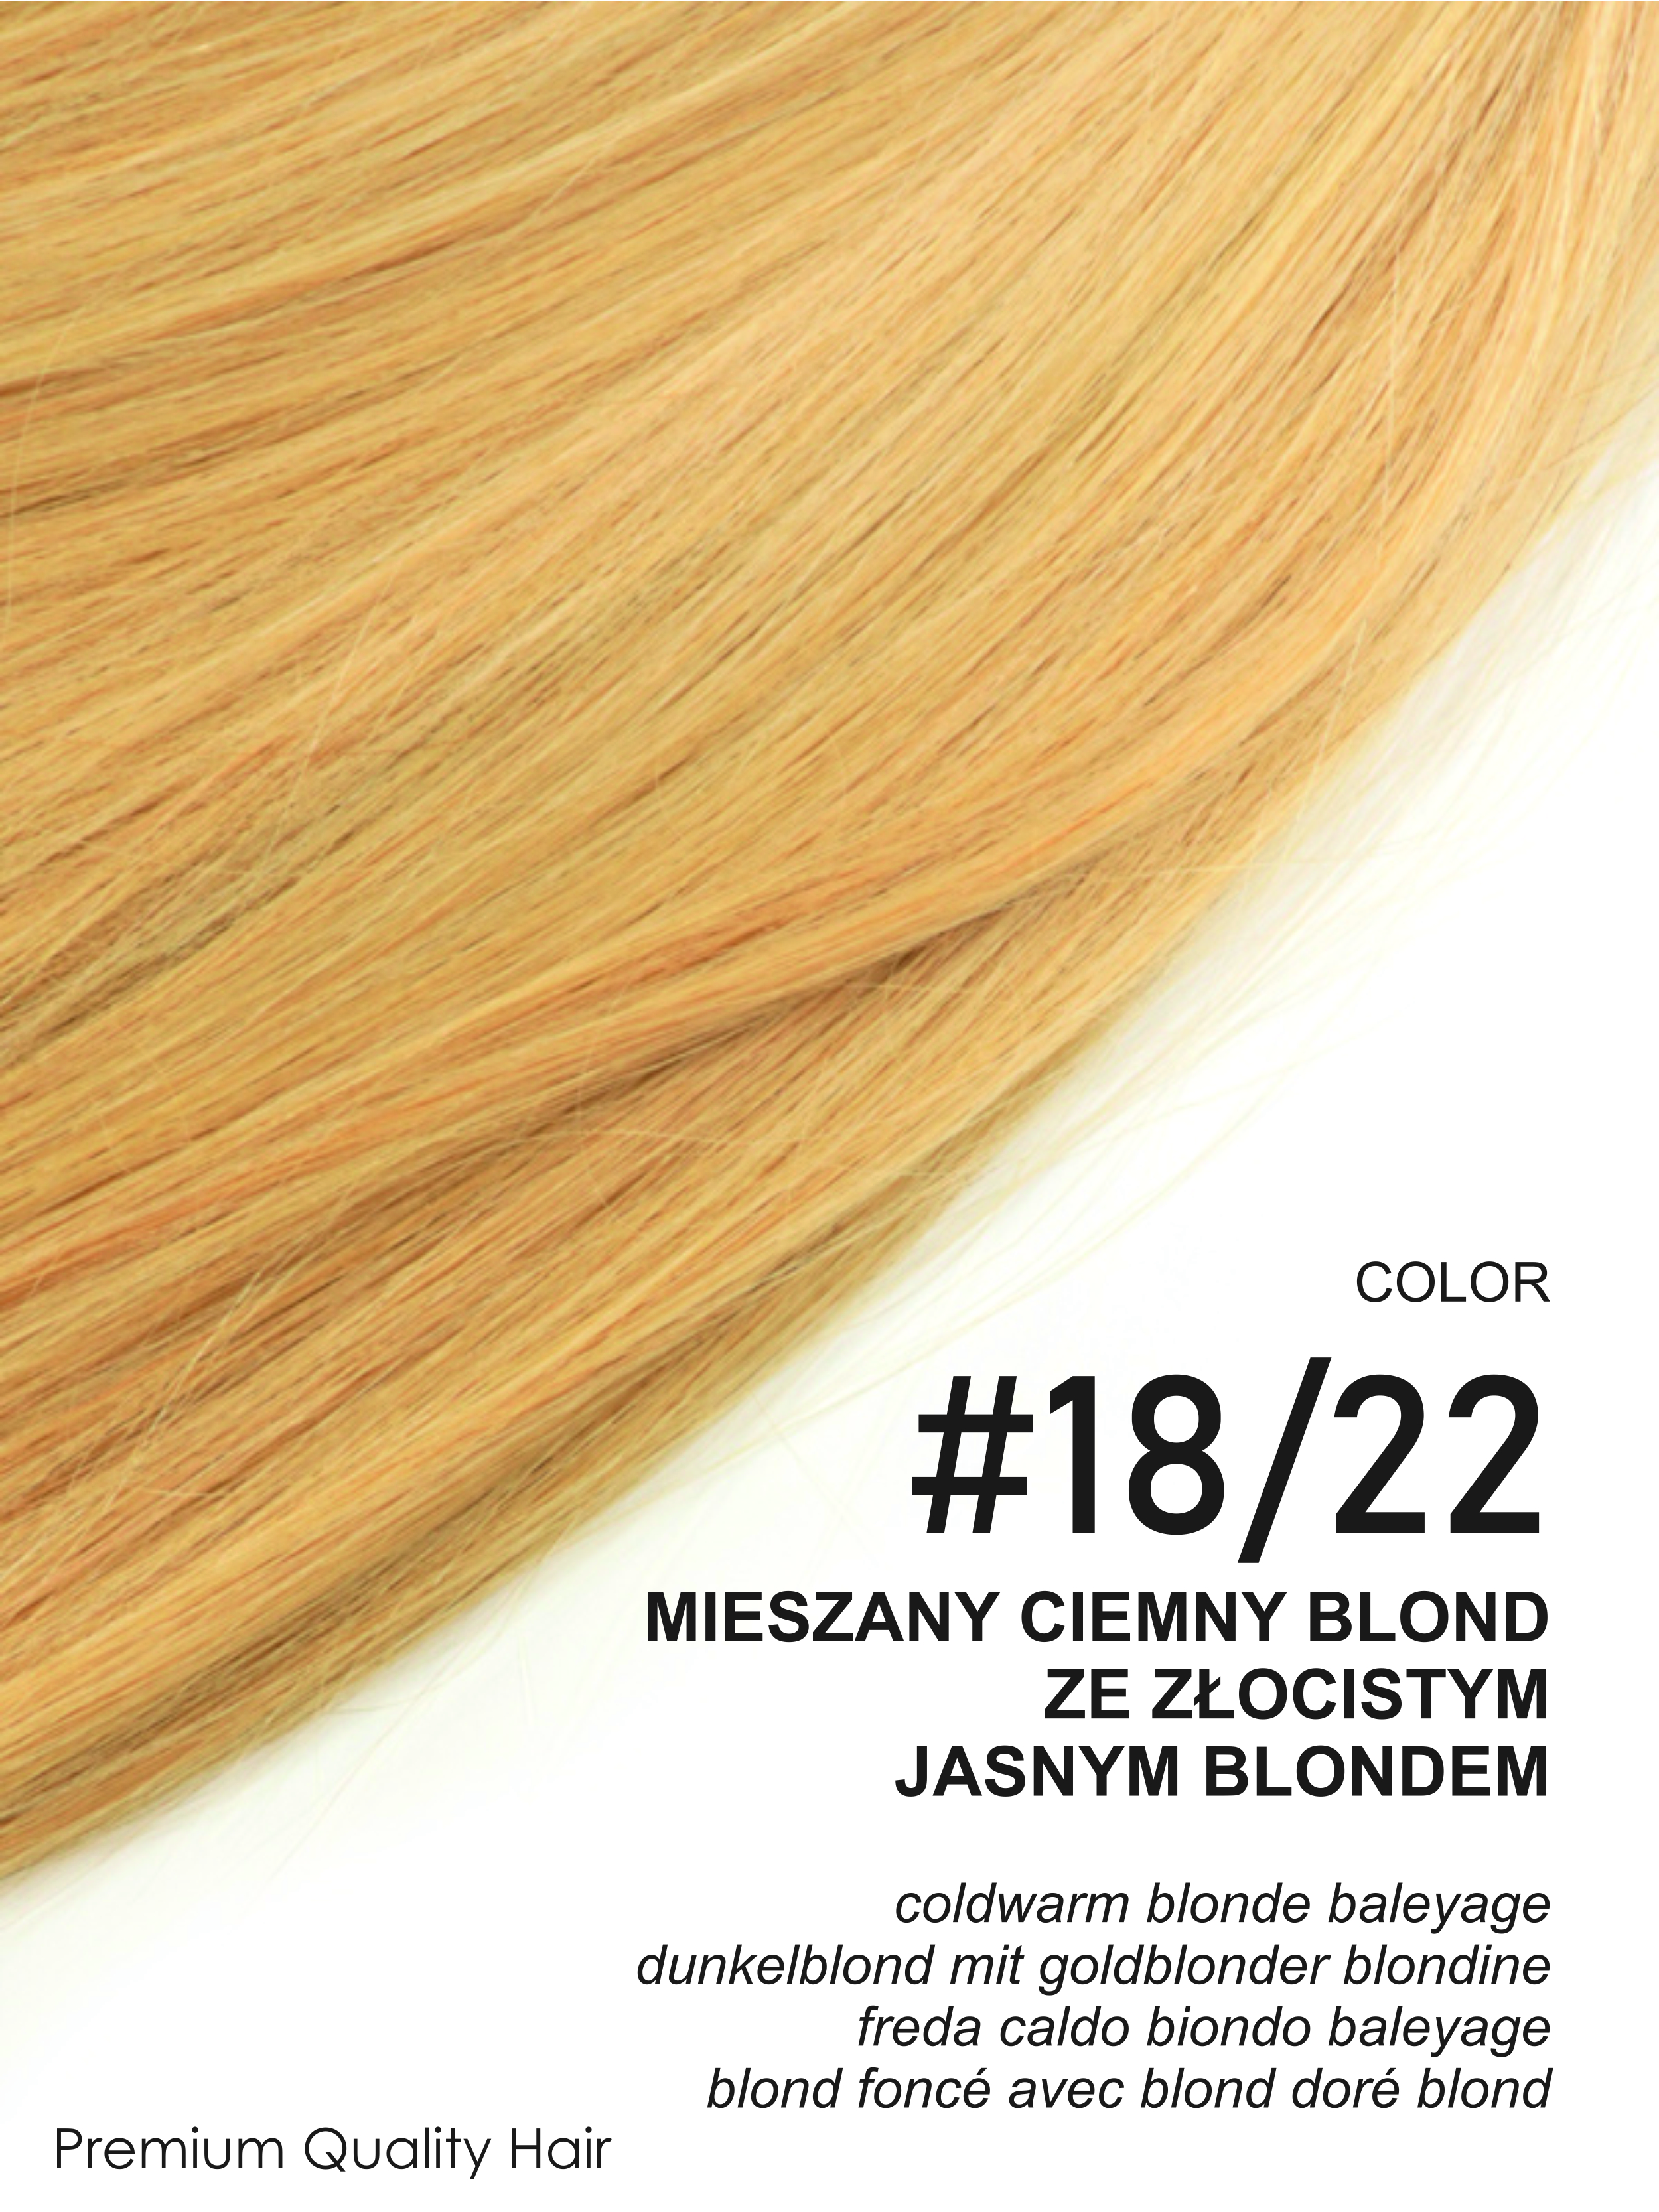 Beauty for You Slovanské vlasy - mikro pásky 2 cm, vlasy 35 cm, pro sendvičovou metodu